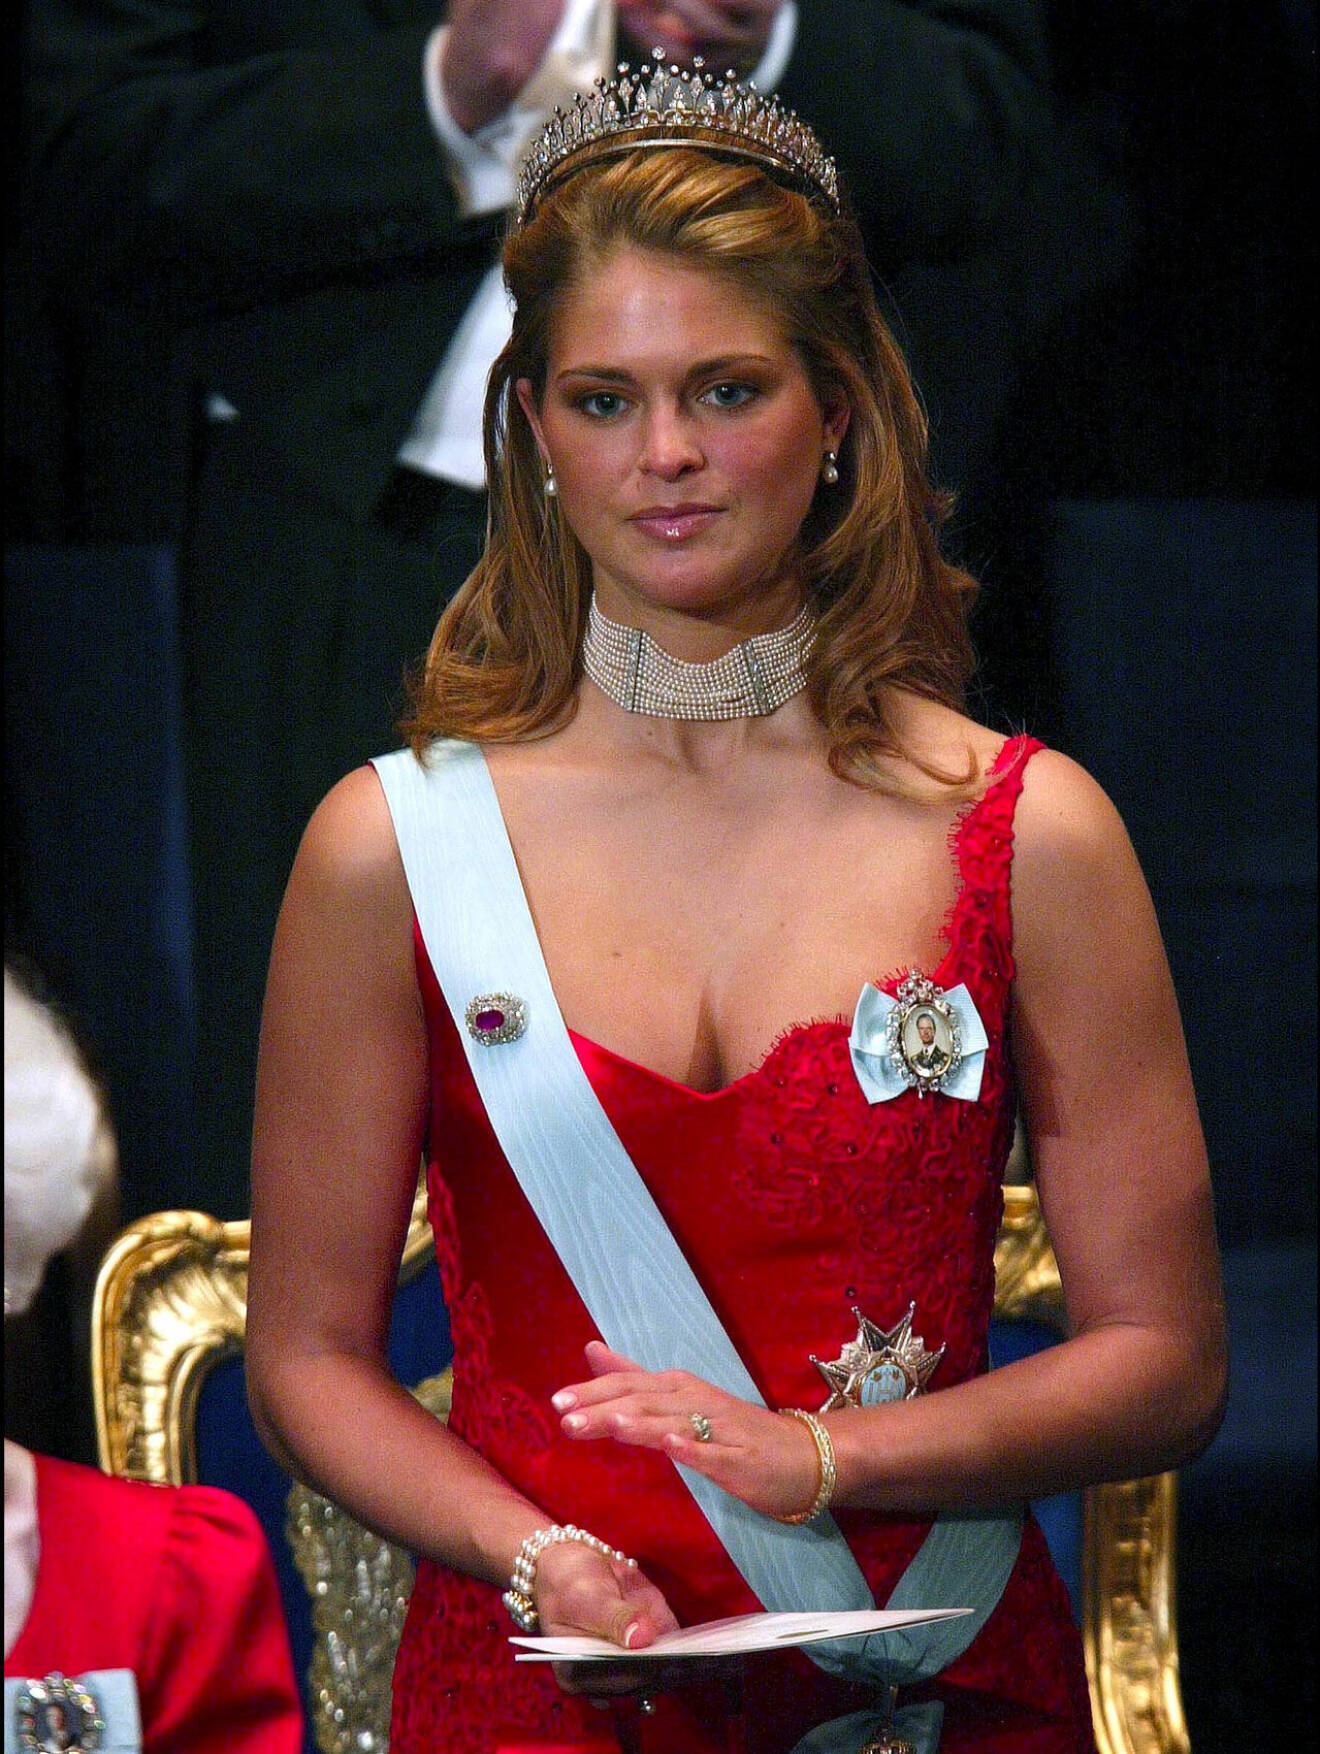 Prinsessan Madeleine i Pär Engsheden år 2002.